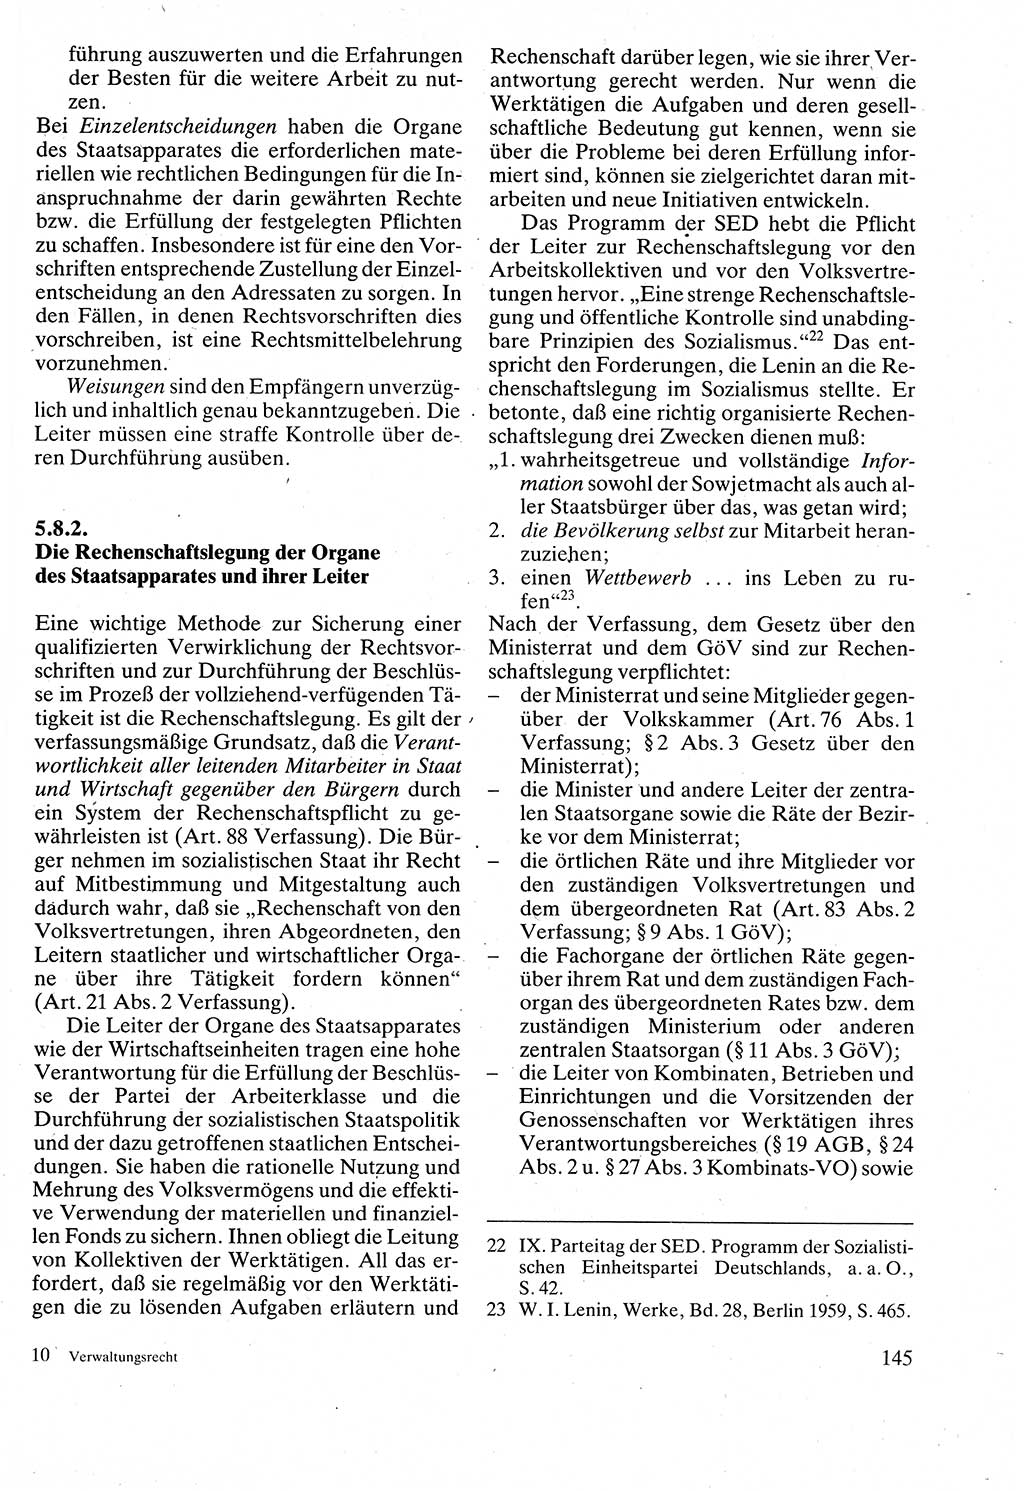 Verwaltungsrecht [Deutsche Demokratische Republik (DDR)], Lehrbuch 1988, Seite 145 (Verw.-R. DDR Lb. 1988, S. 145)